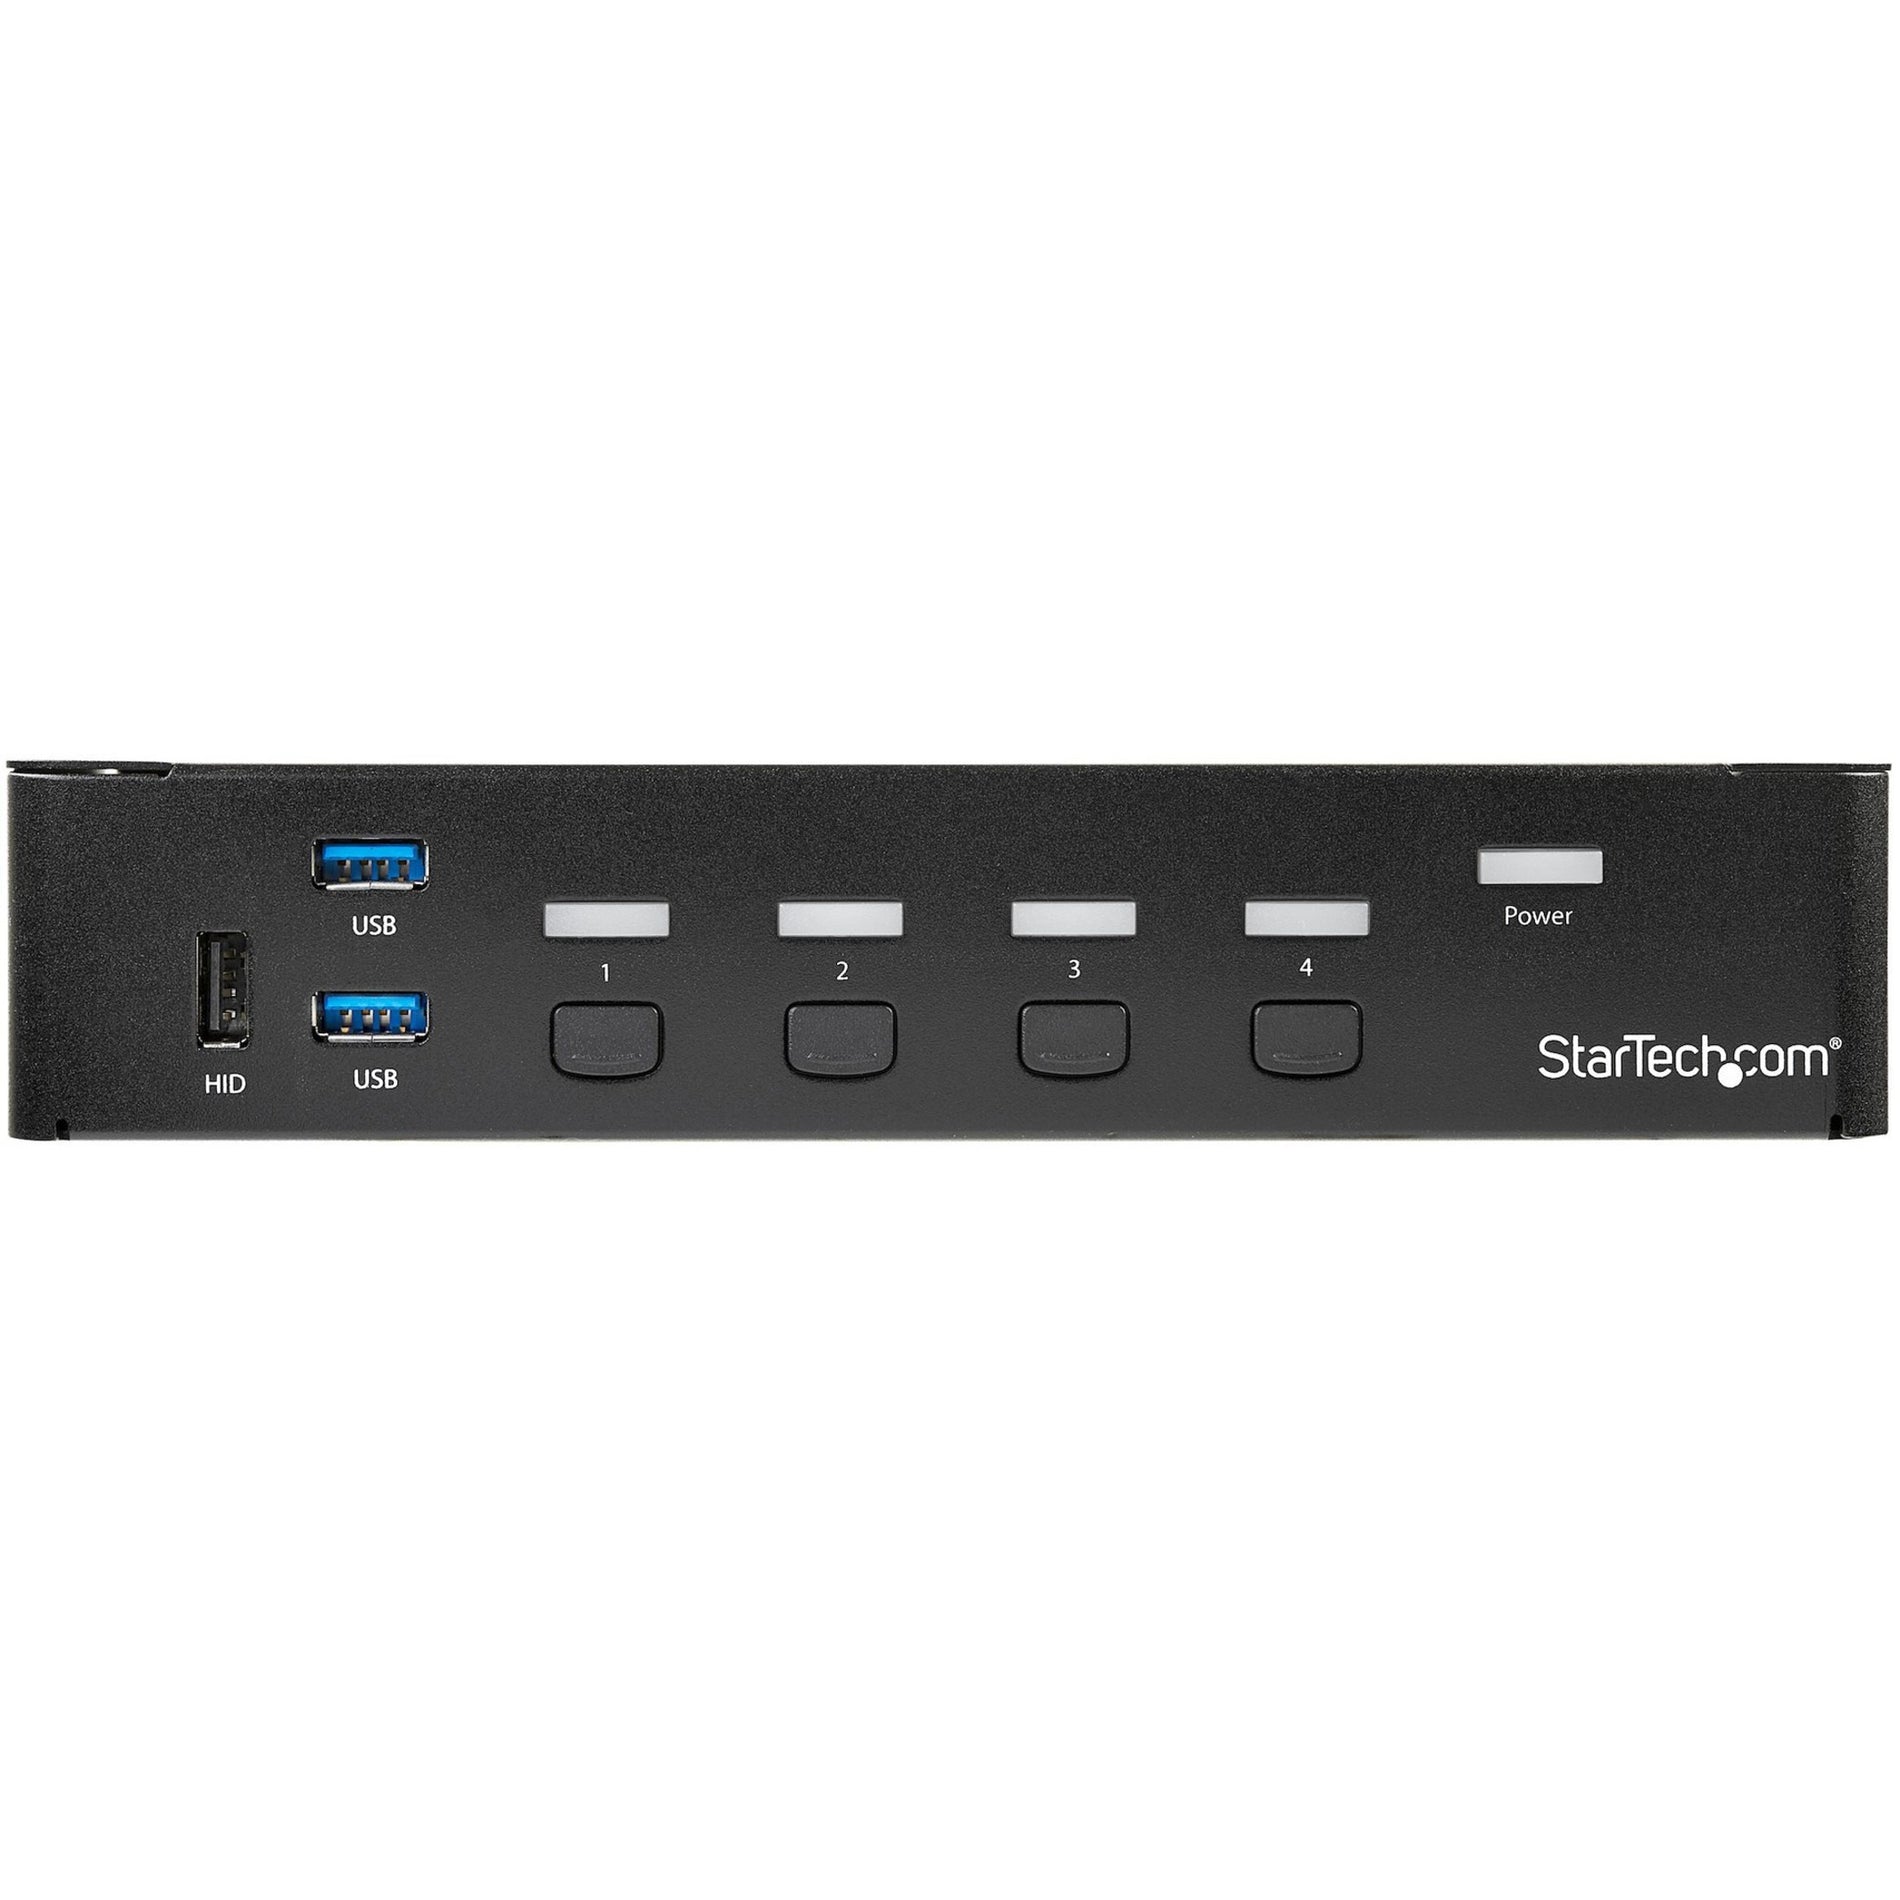 StarTech.com SV431DPU3A2 4-Port DisplayPort KVM Switch - USB 3.0 - 4K Built-in USB 3.0 Hub for Peripherals